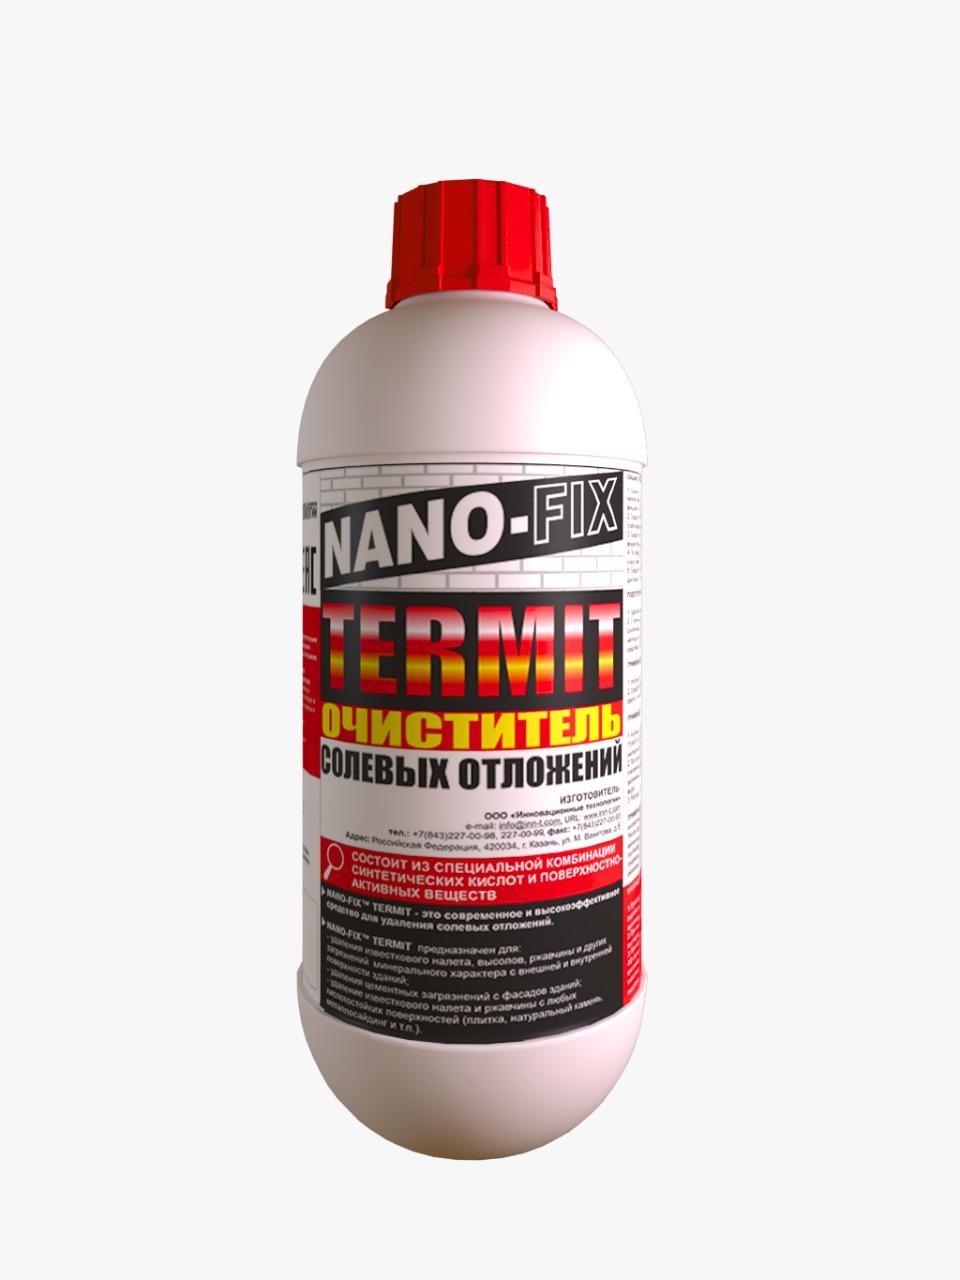 NANO-FIX TERMIT-средство для очистки поверхностей от солевых отложений. Татарстан